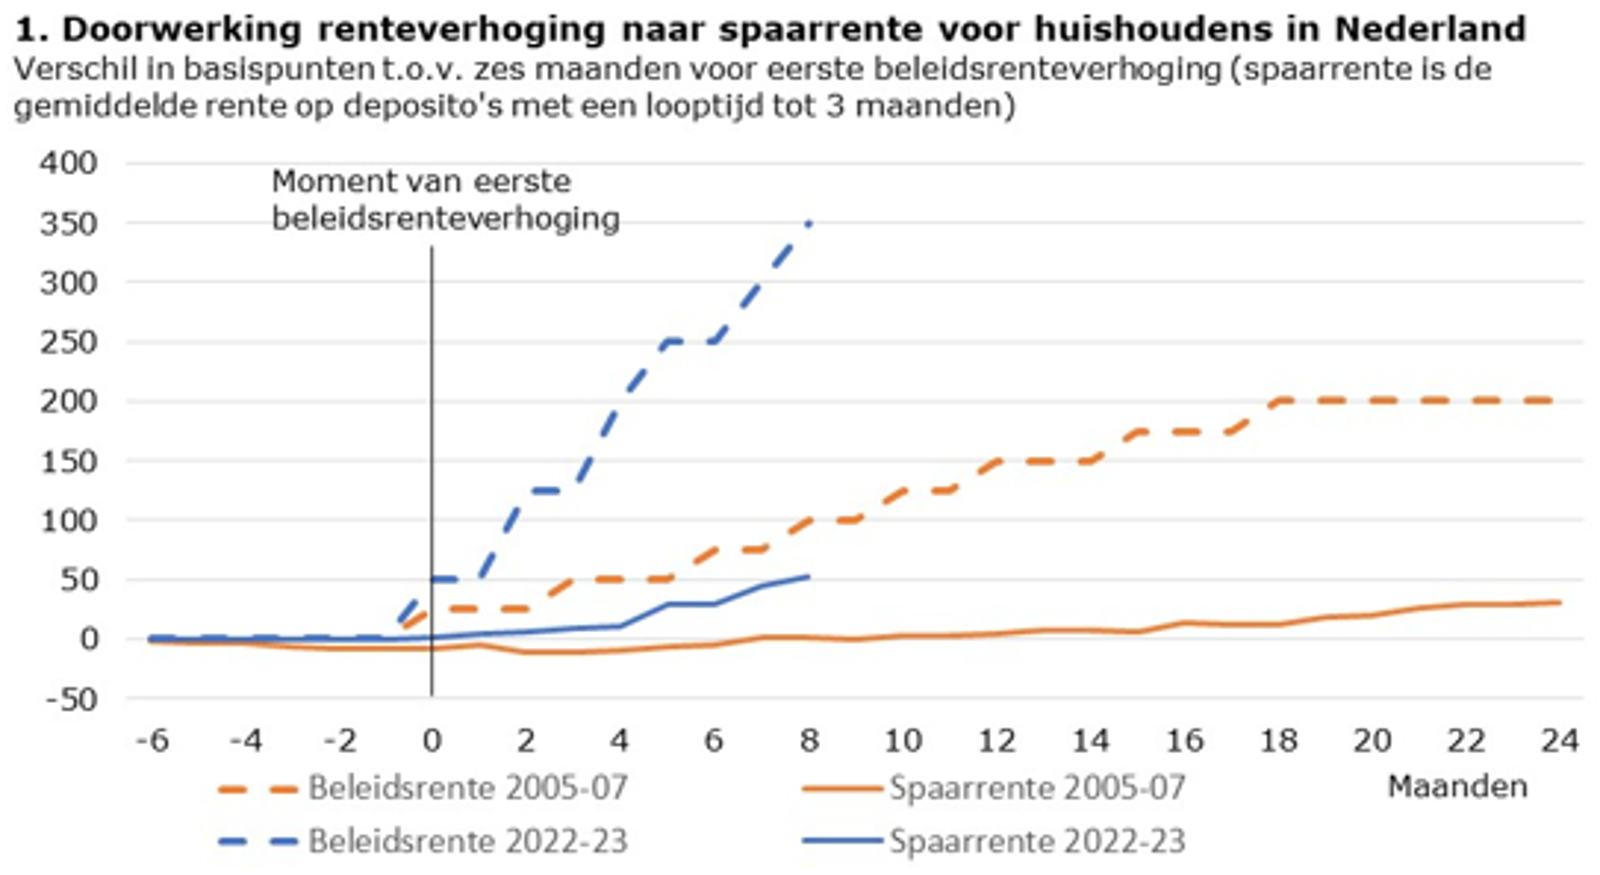 Doorwerking renteverhoging naar spraarrente voor huishoudens in Nederland